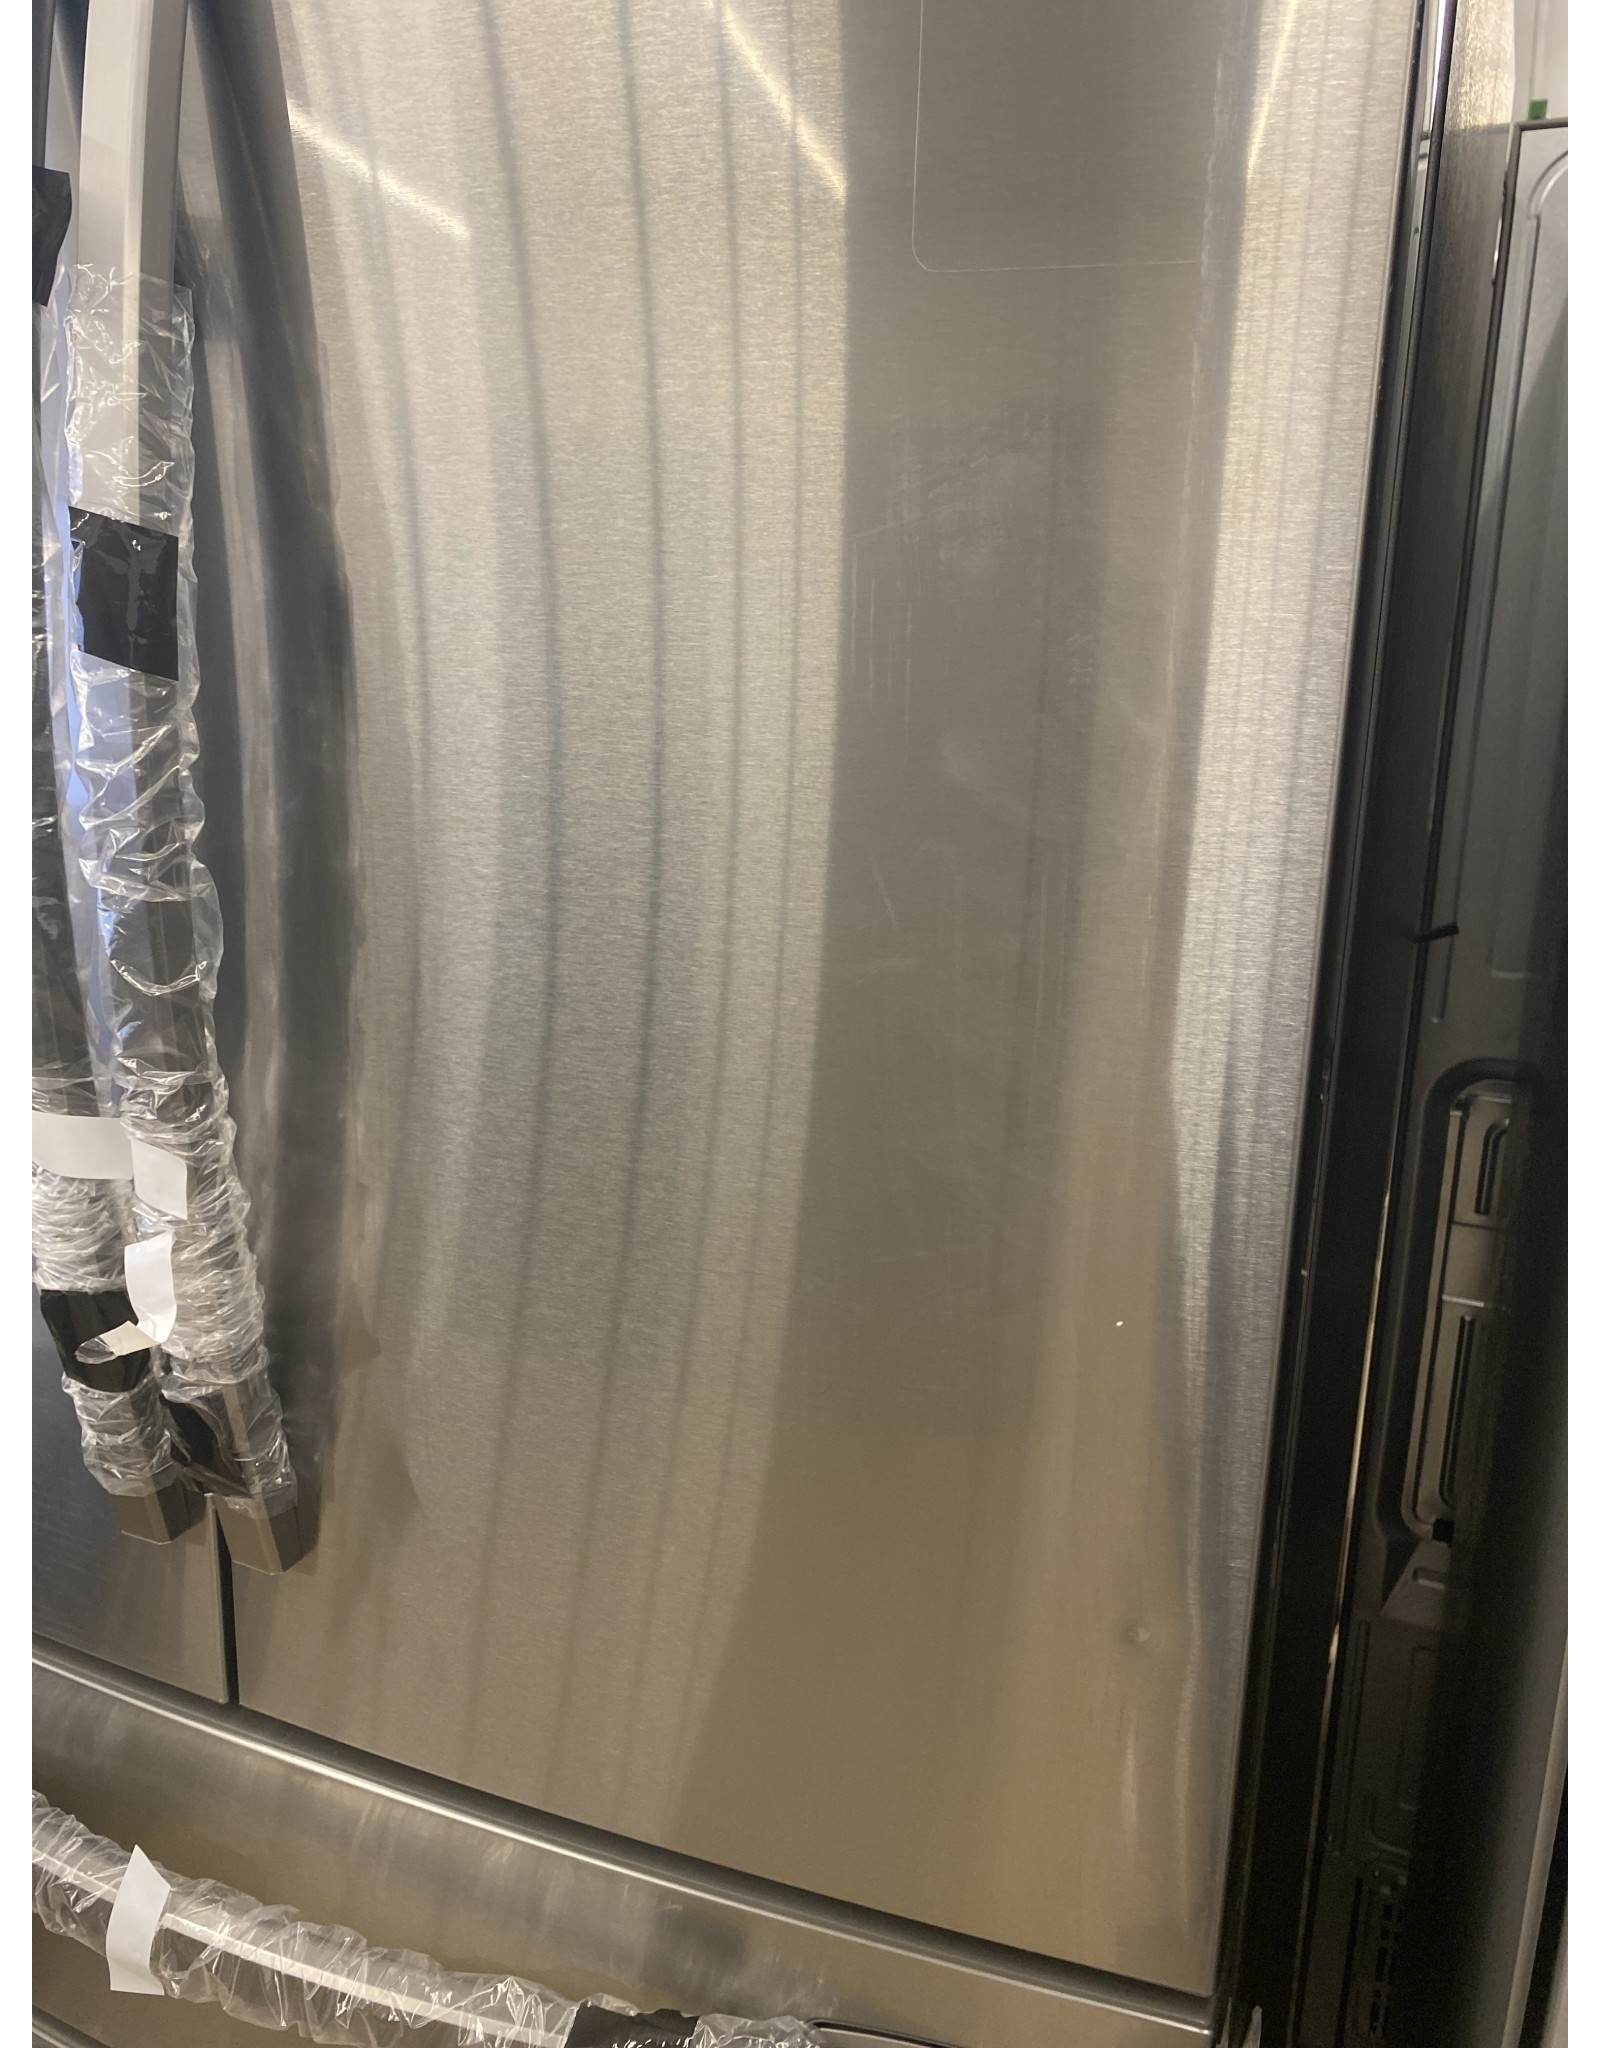 SAMSUNG RF24R7201SR 23 cu. ft. 4-Door French Door Refrigerator in Fingerprint Resistant Stainless Steel, Counter Depth